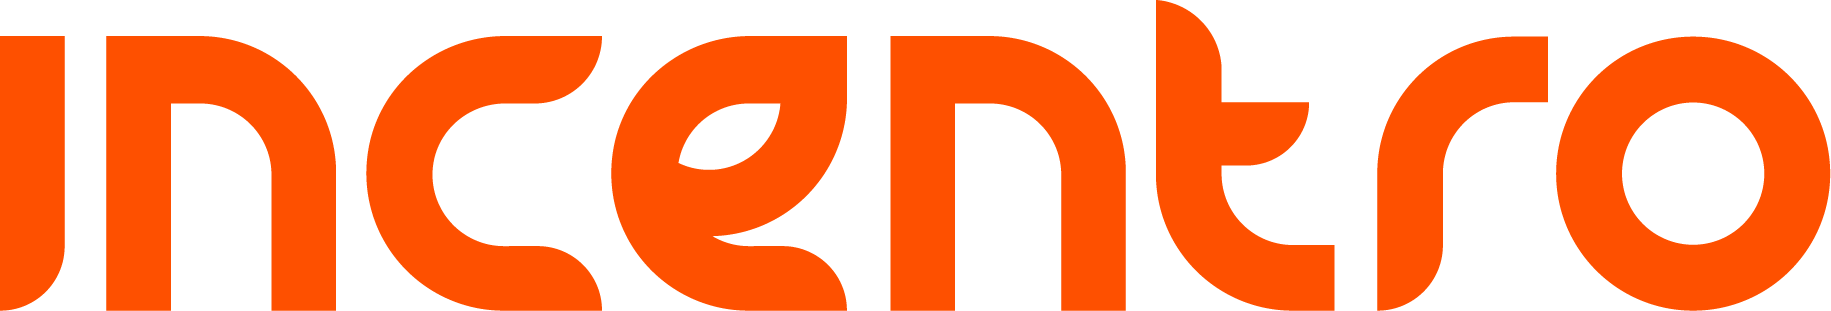 Incentro-logo-2018-Orange